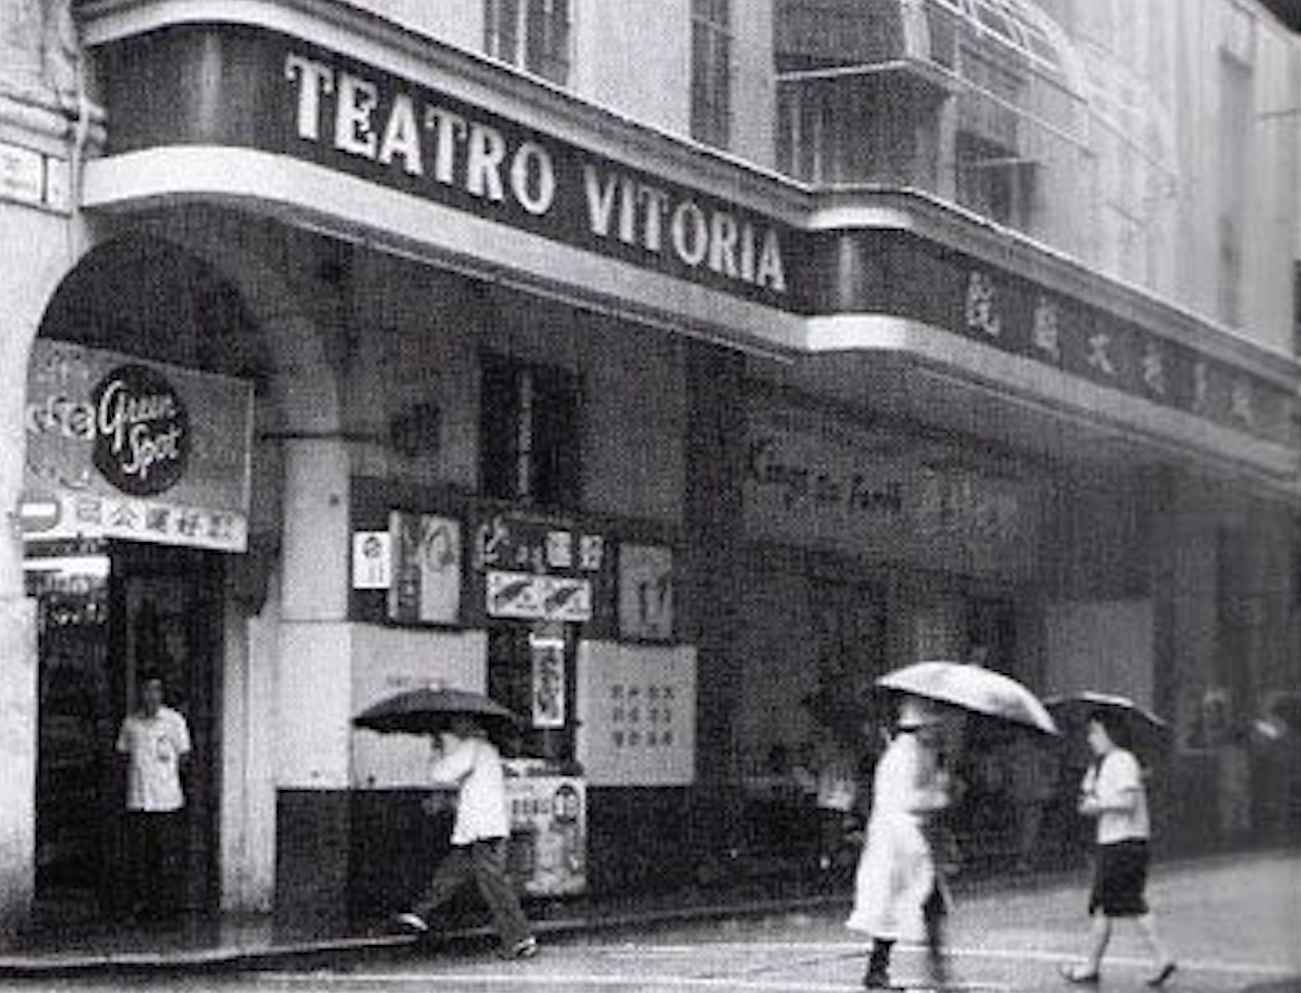 Teatro Vitoria Macau